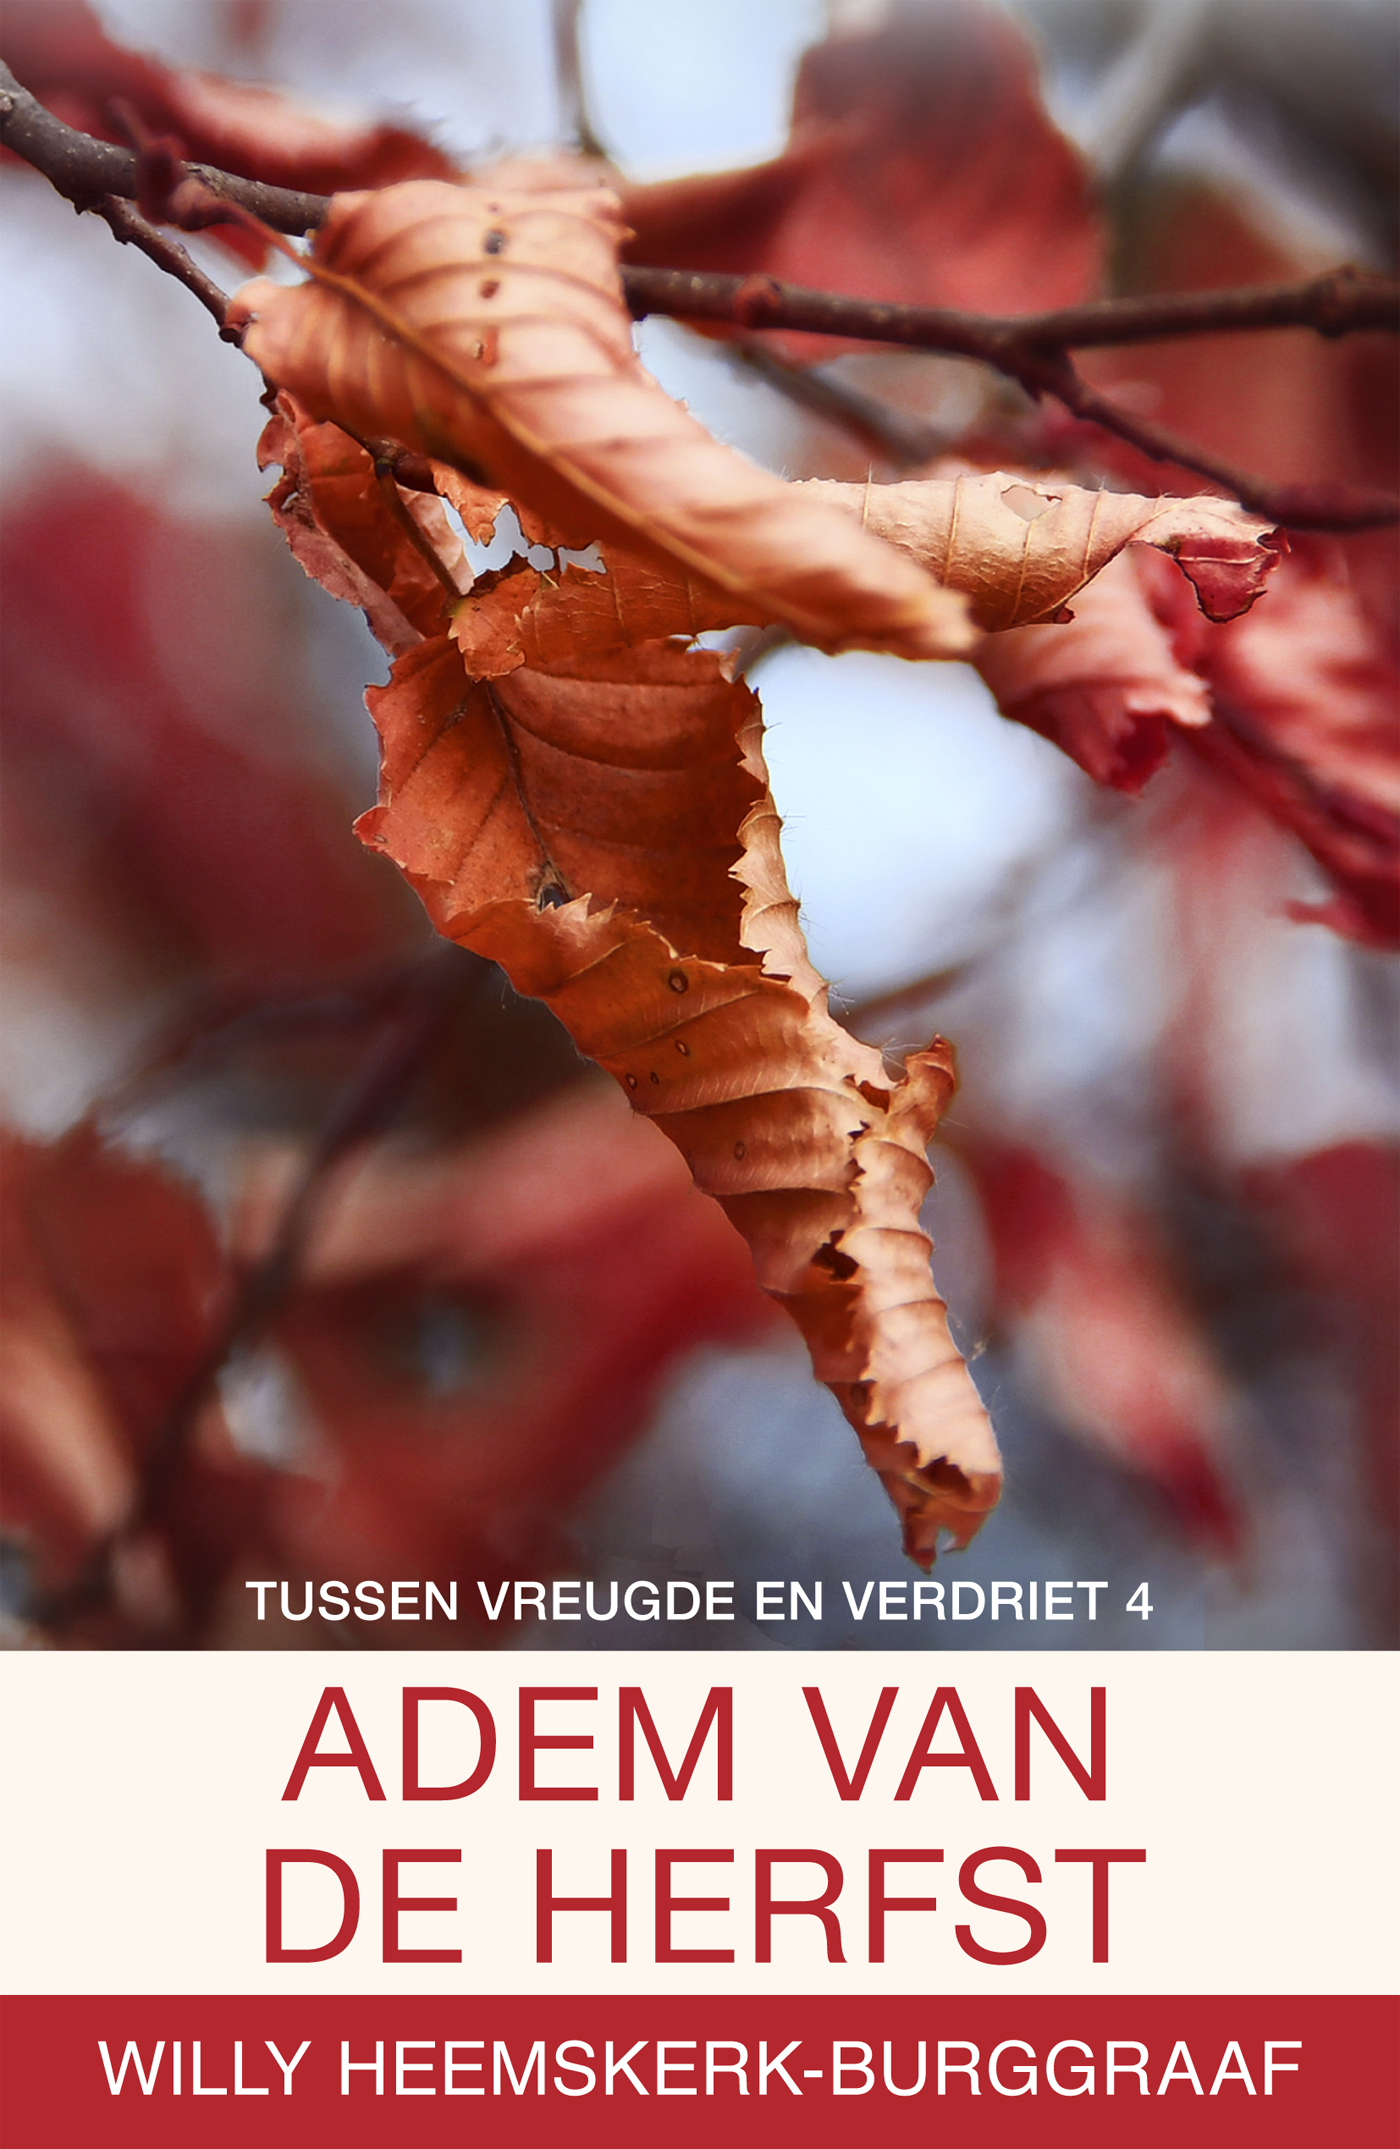 De adem van de herfst (Ebook)